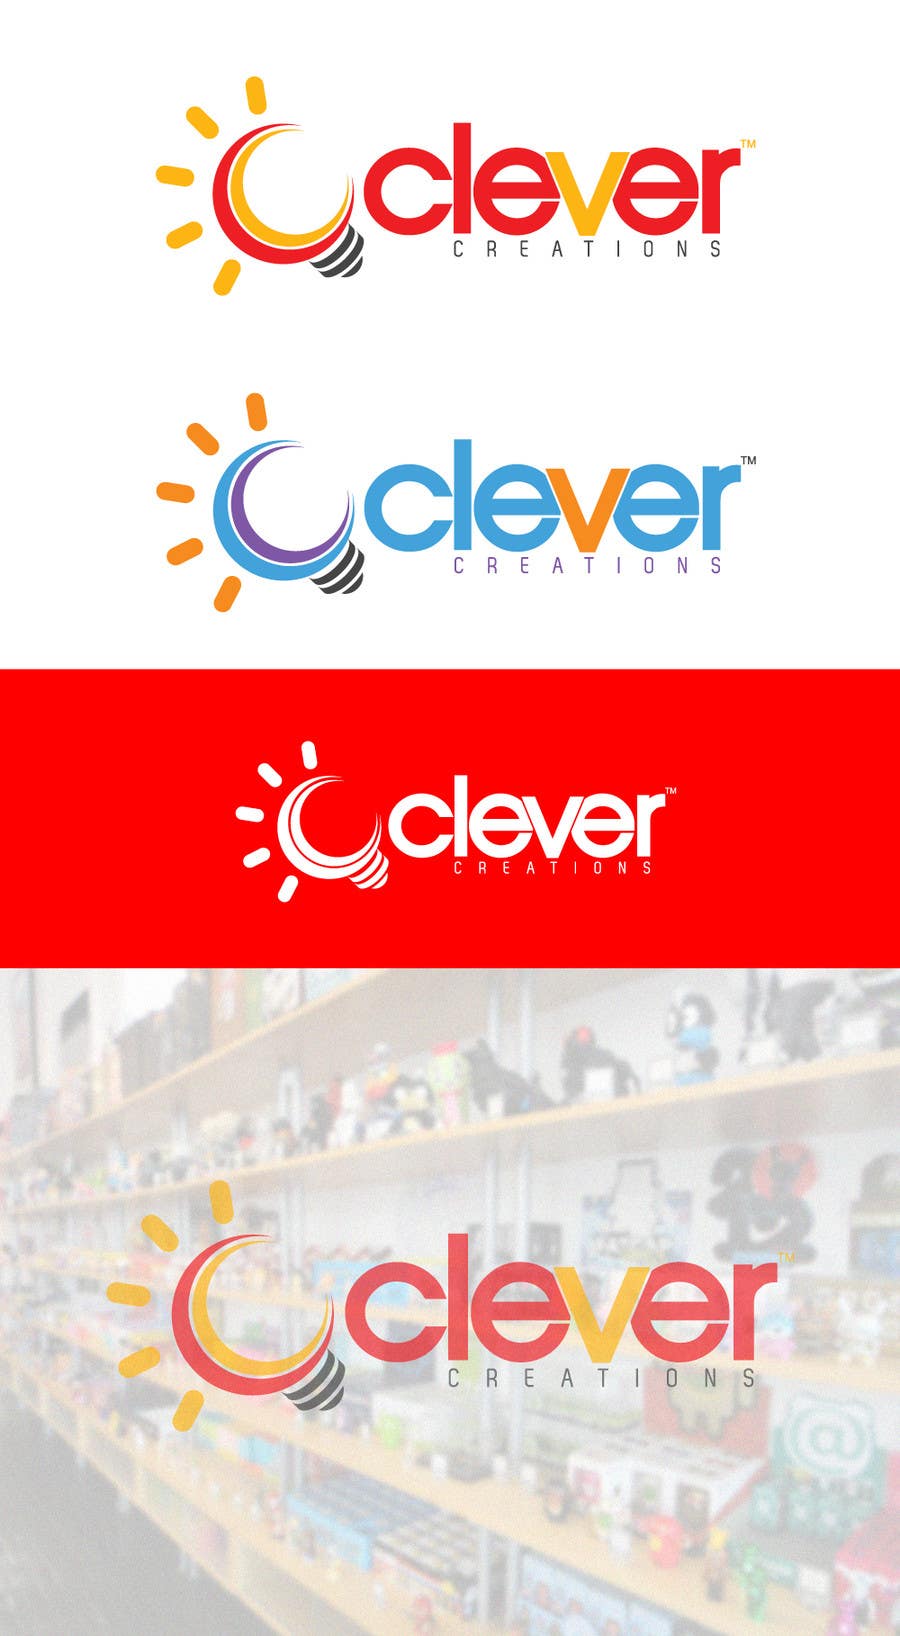 Kilpailutyö #164 kilpailussa                                                 Design a Logo for Clever Creations
                                            